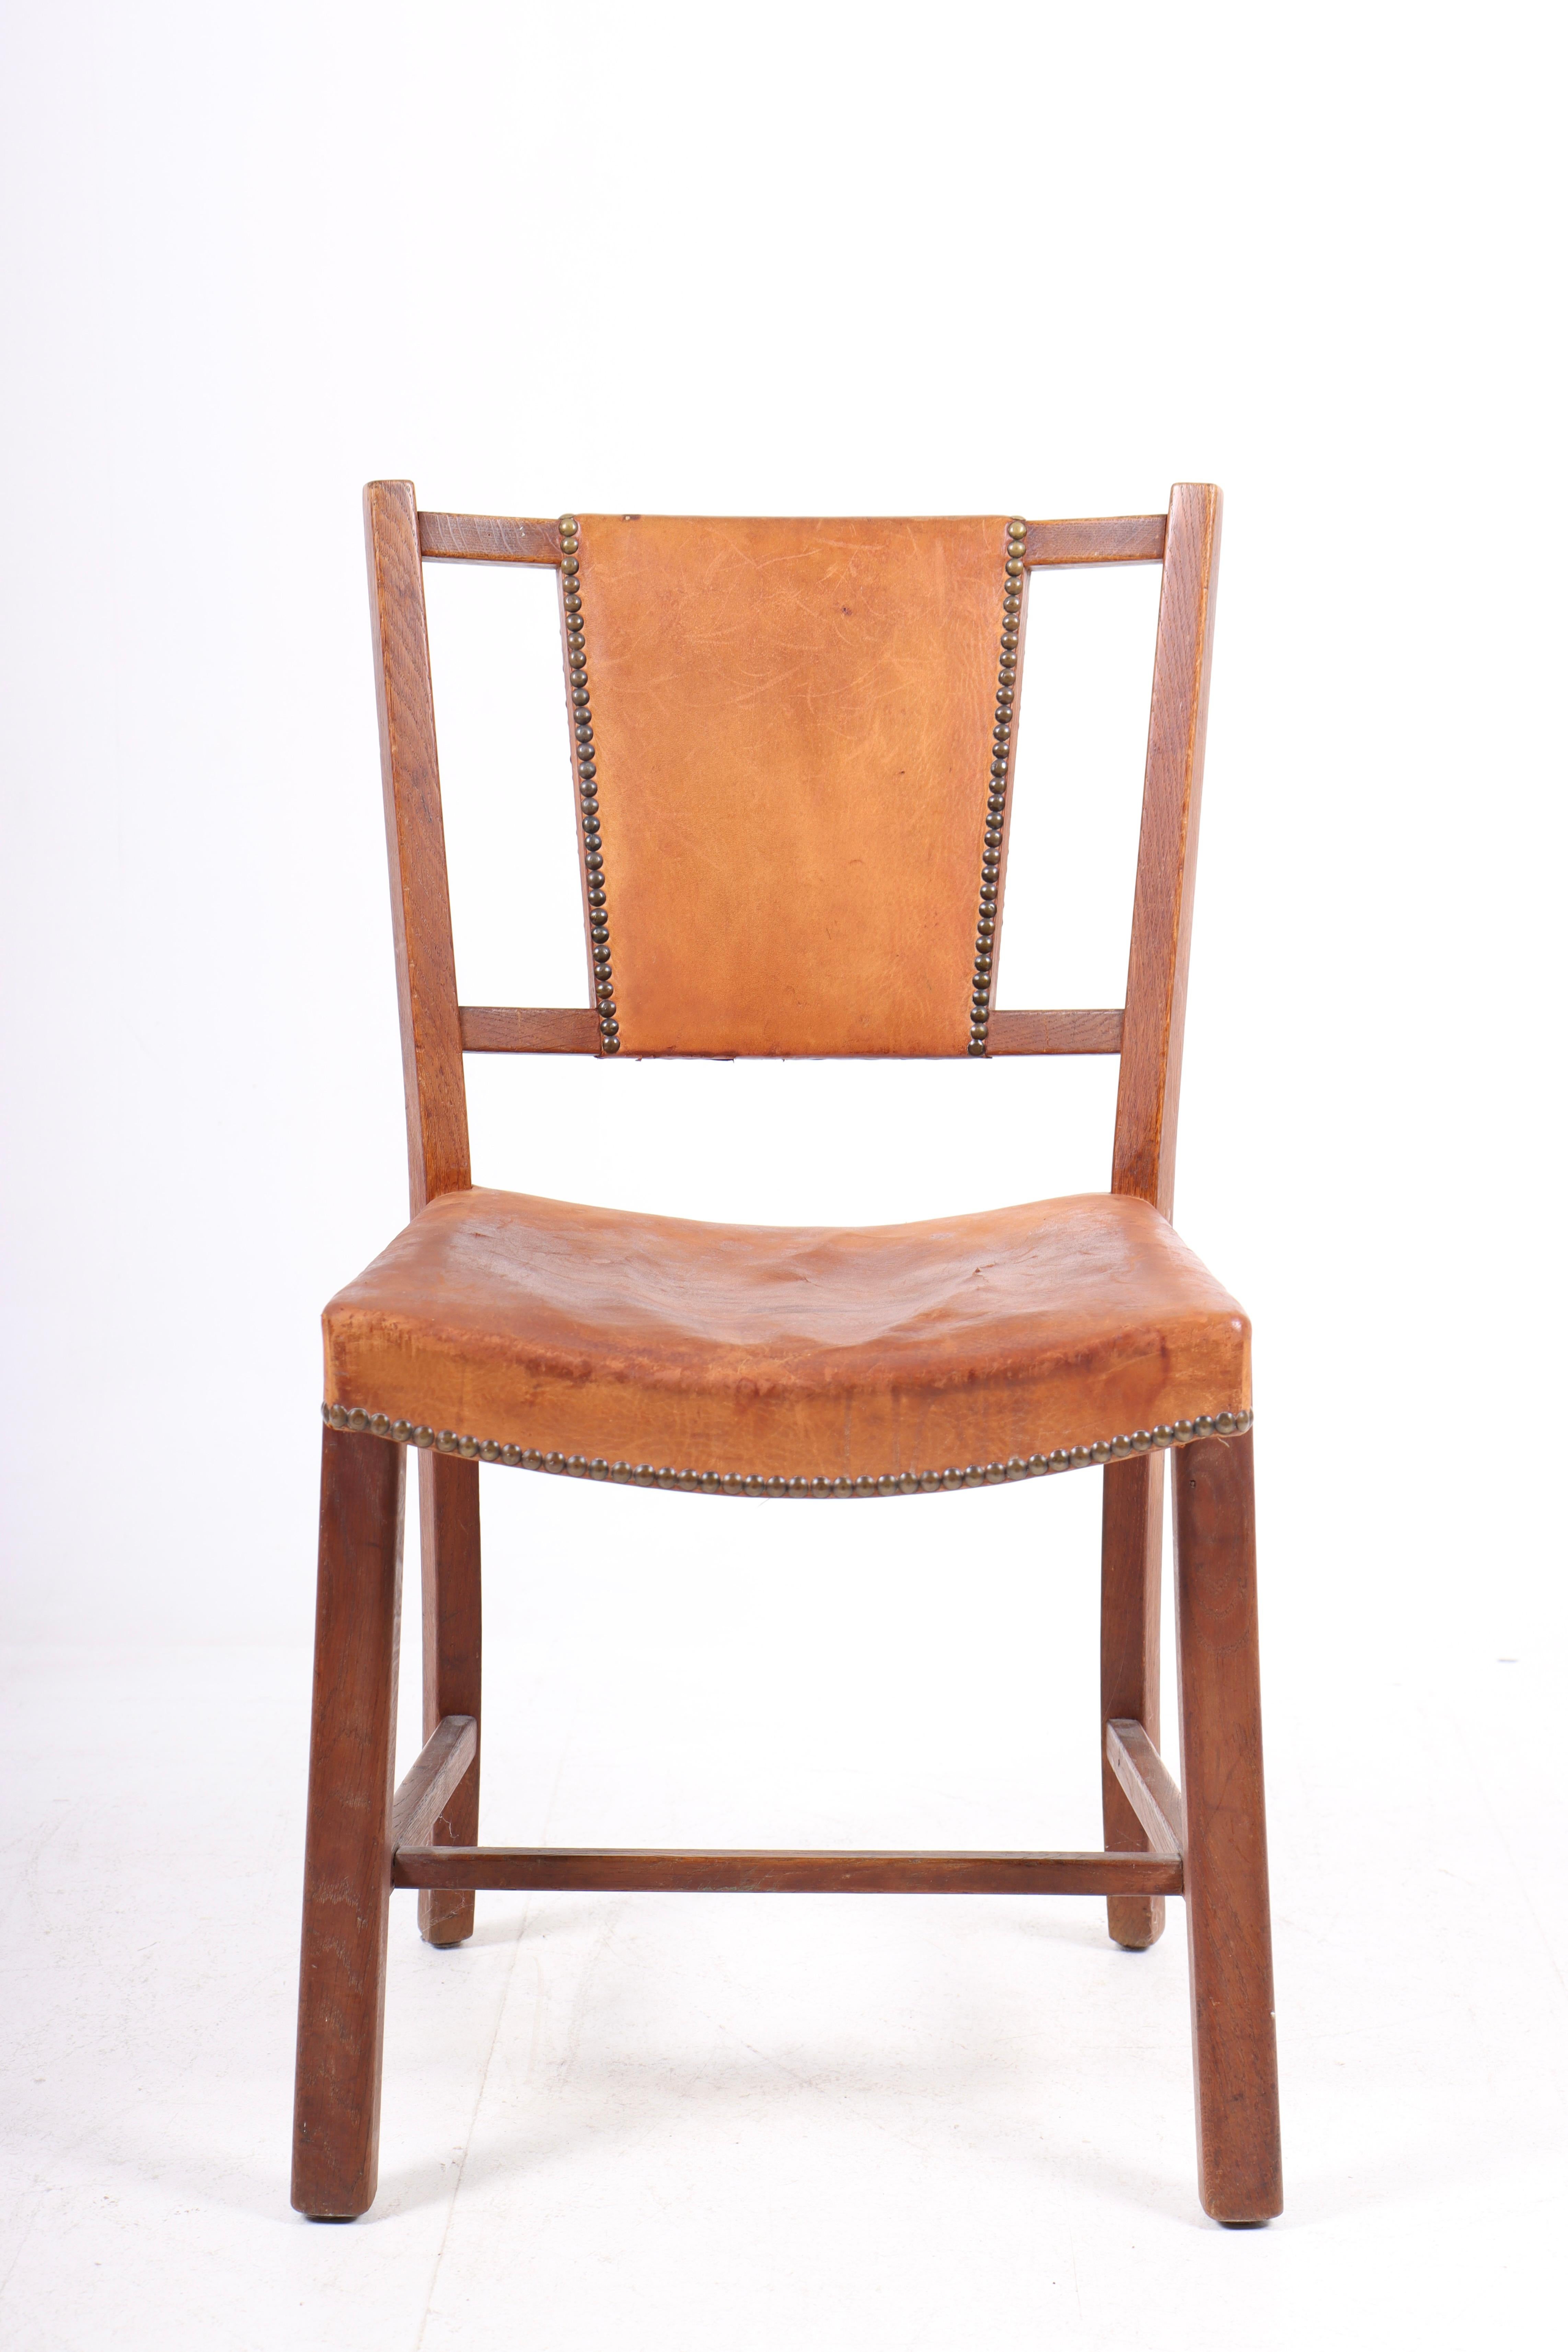 Dänischer Beistellstuhl aus patiniertem Leder und Eiche. Entworfen und hergestellt in Dänemark, Originalzustand.